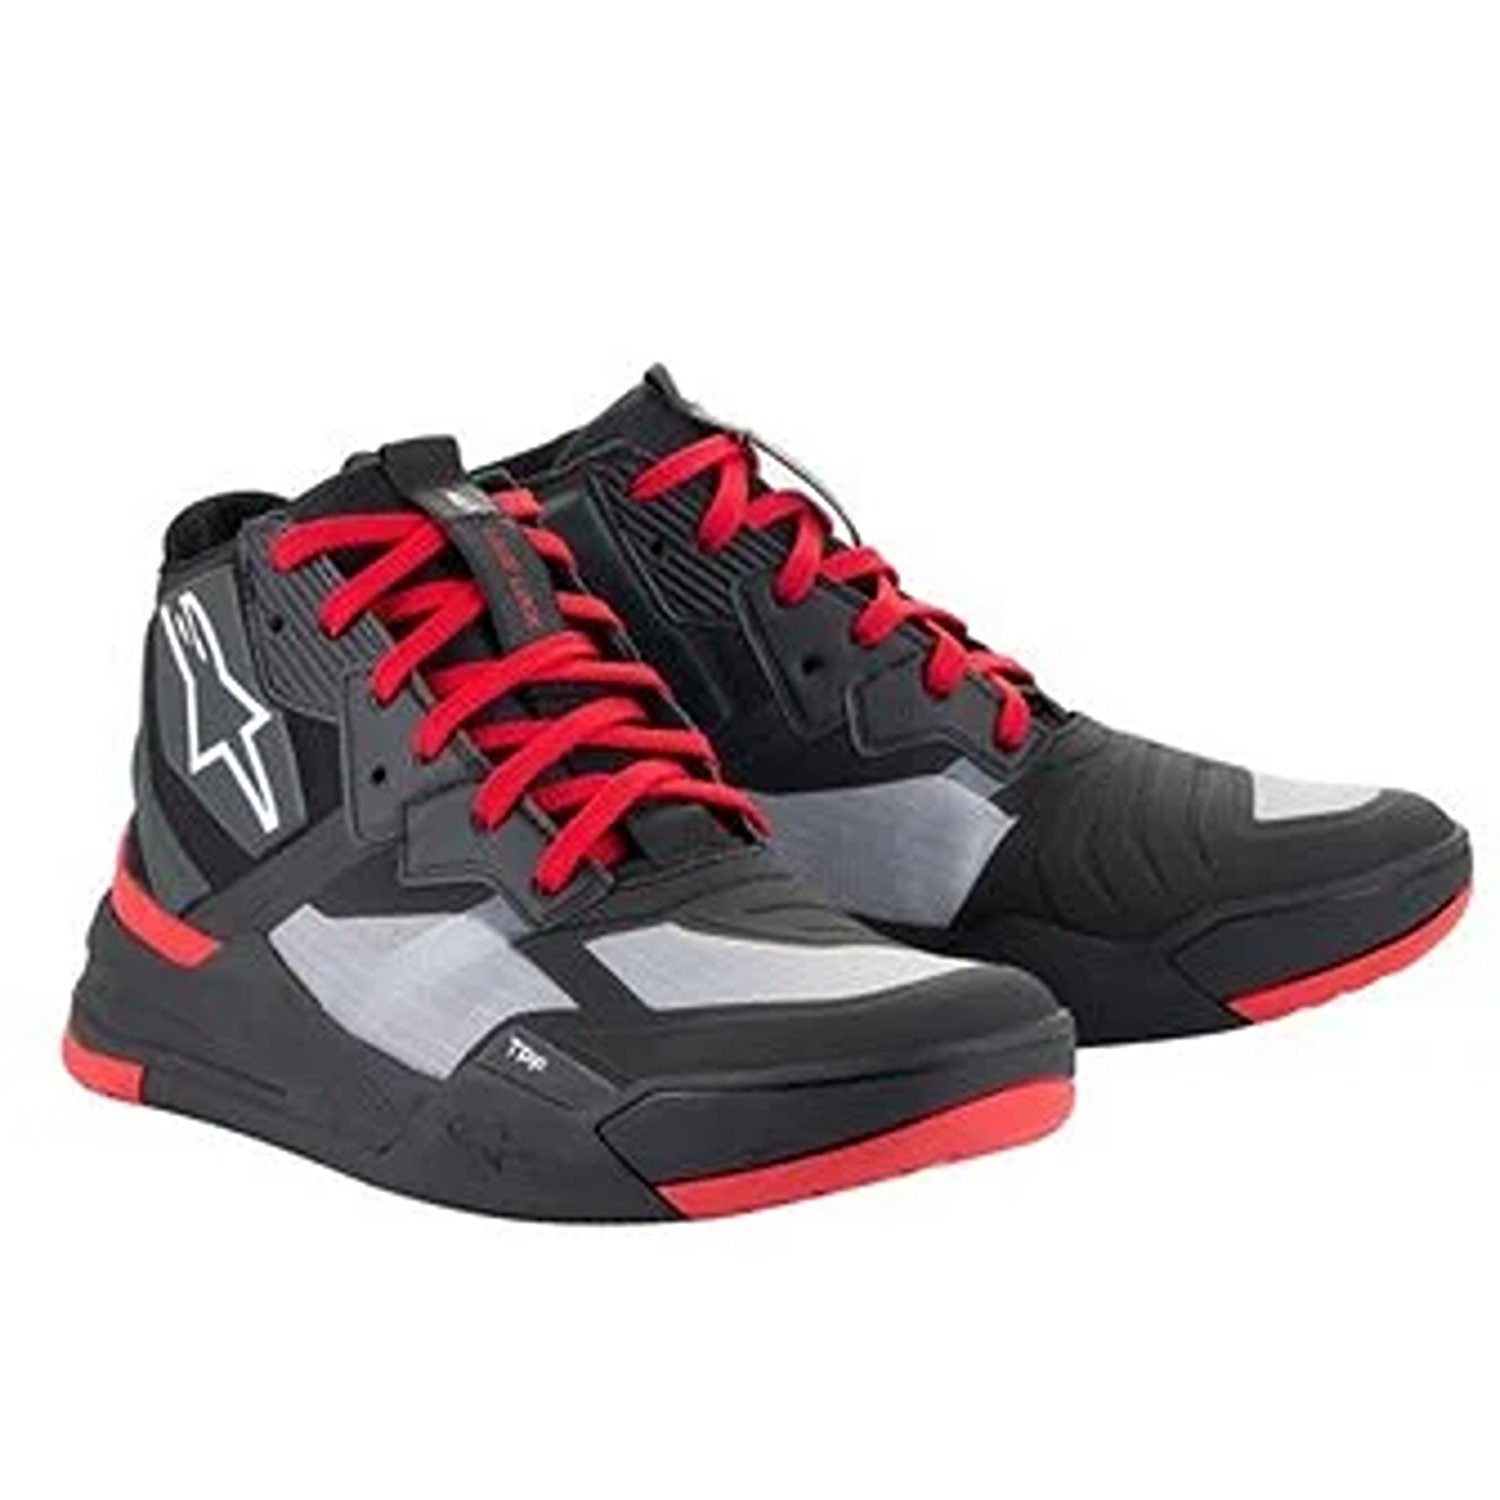 Image of Alpinestars Speedflight Shoes Black Bright Red White Größe US 65